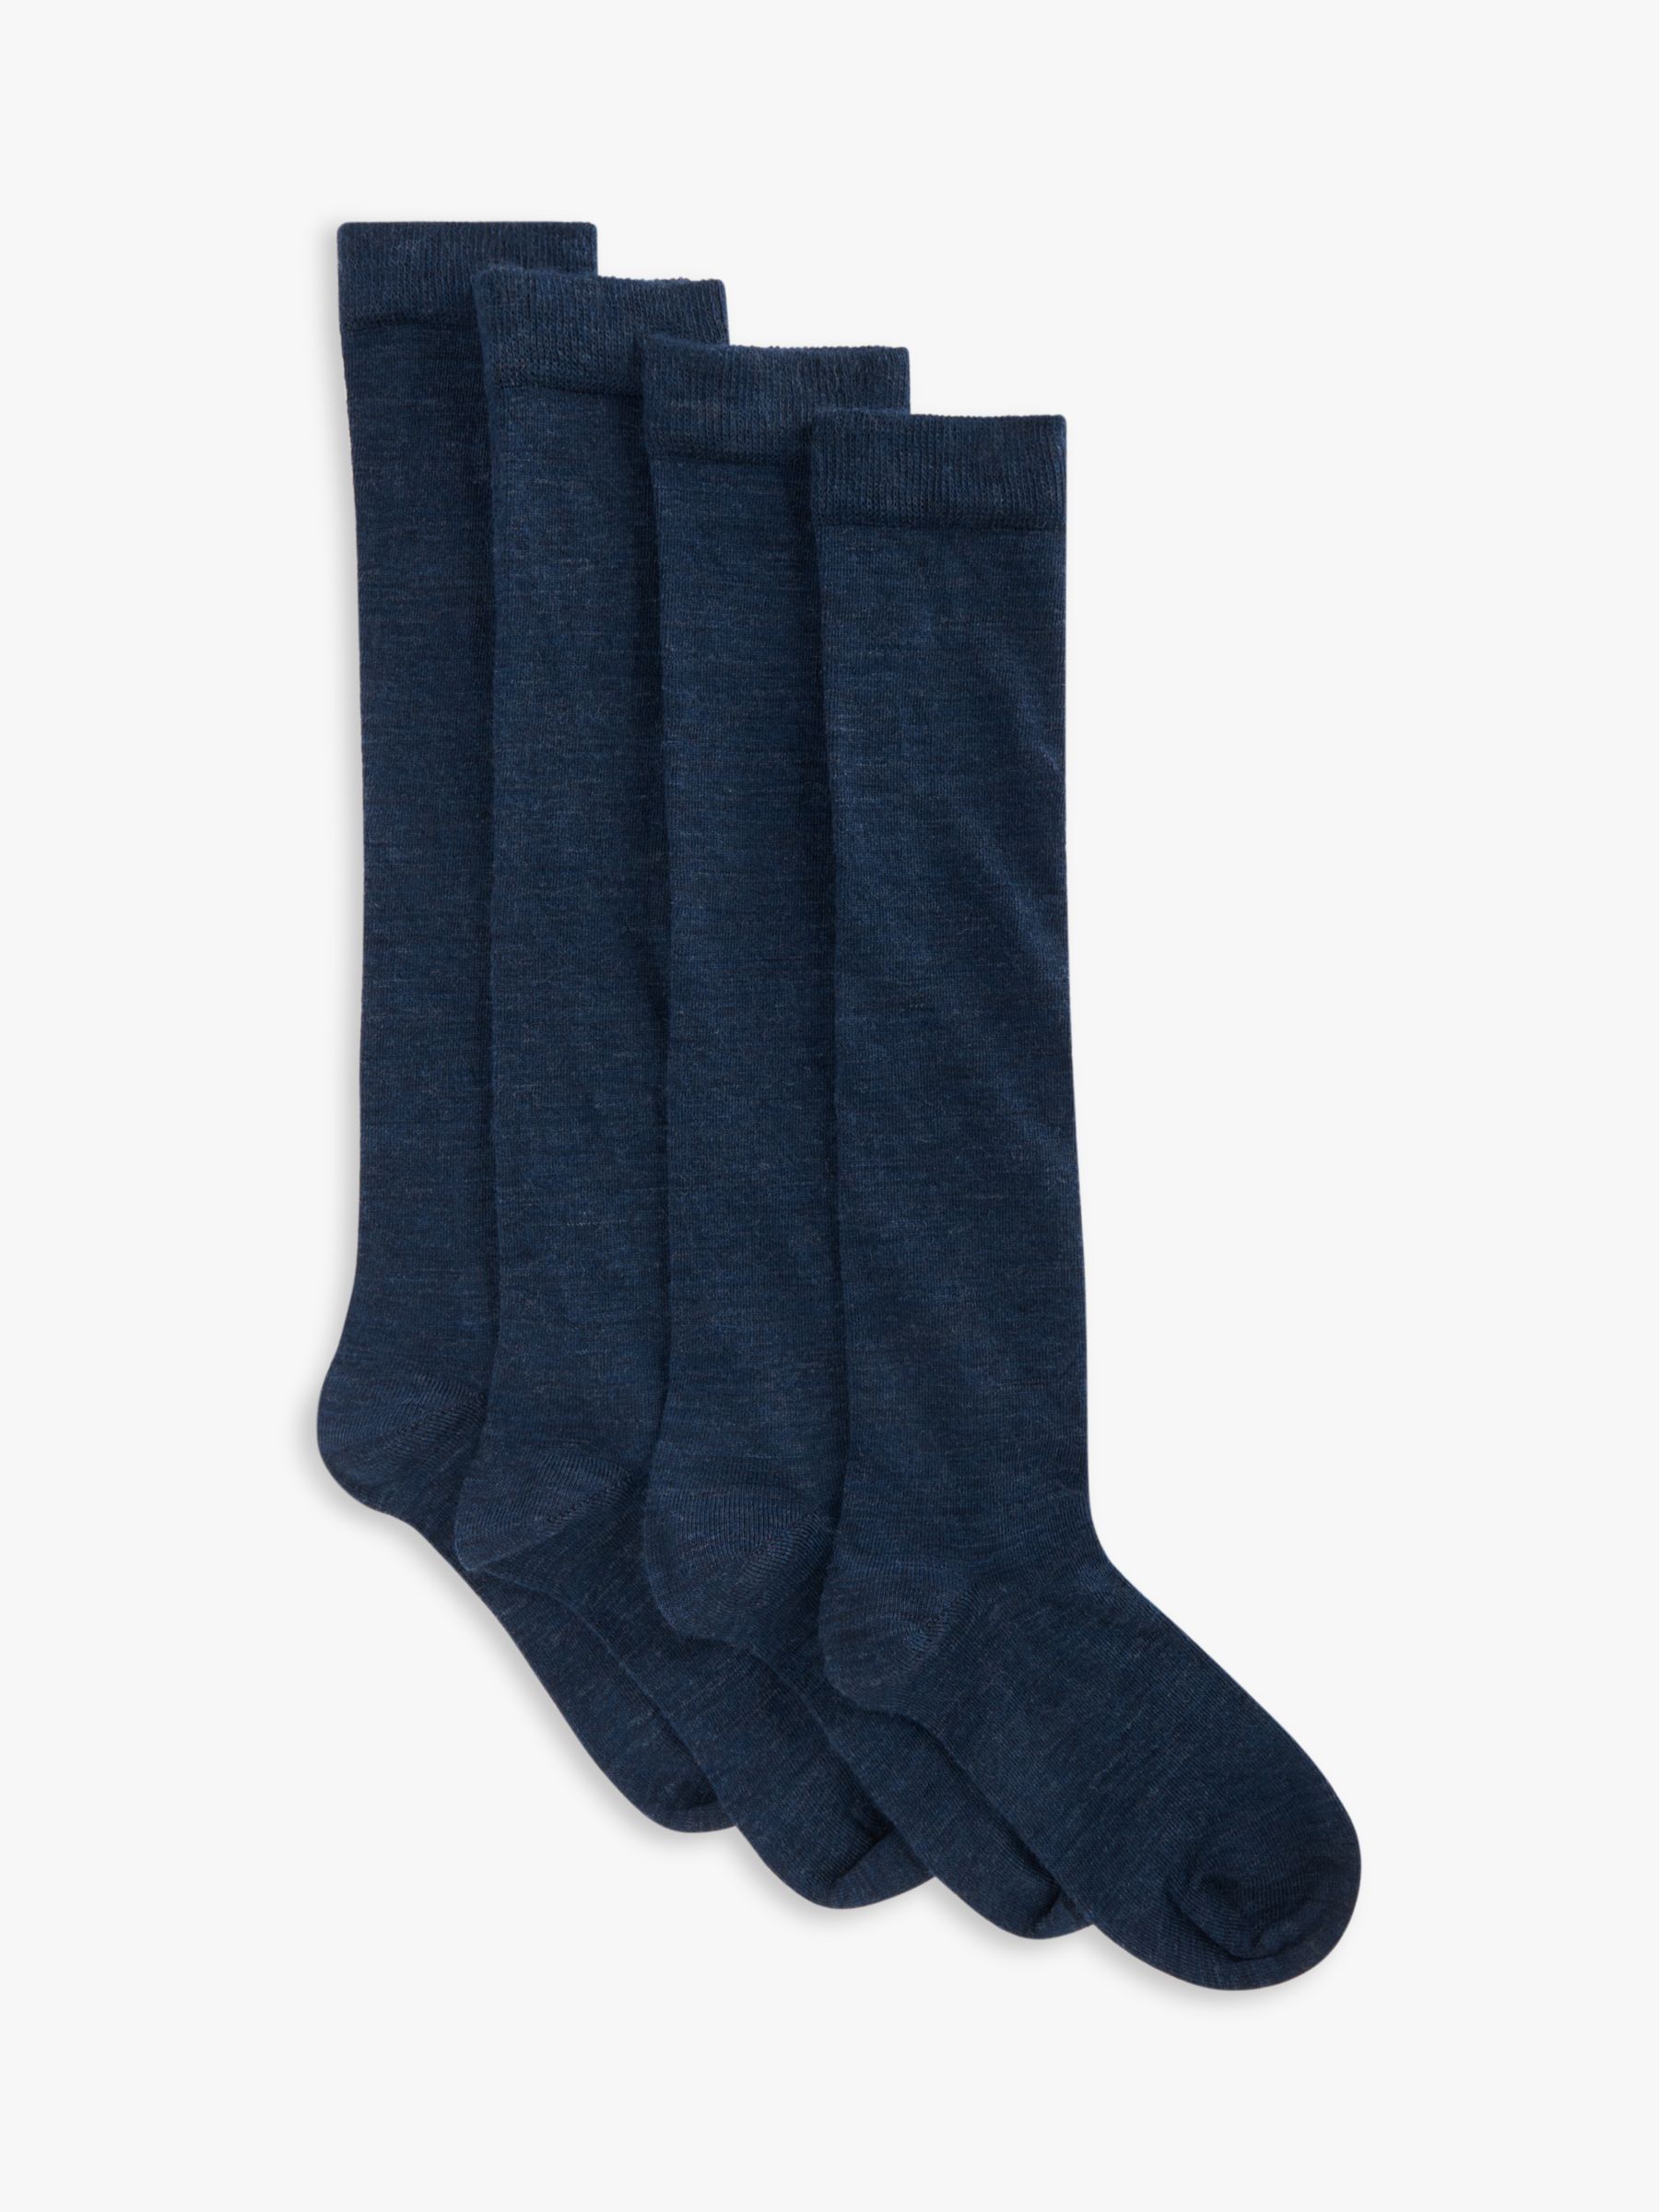 John Lewis Merino Wool Mix Knee High Socks, Navy at John Lewis & Partners